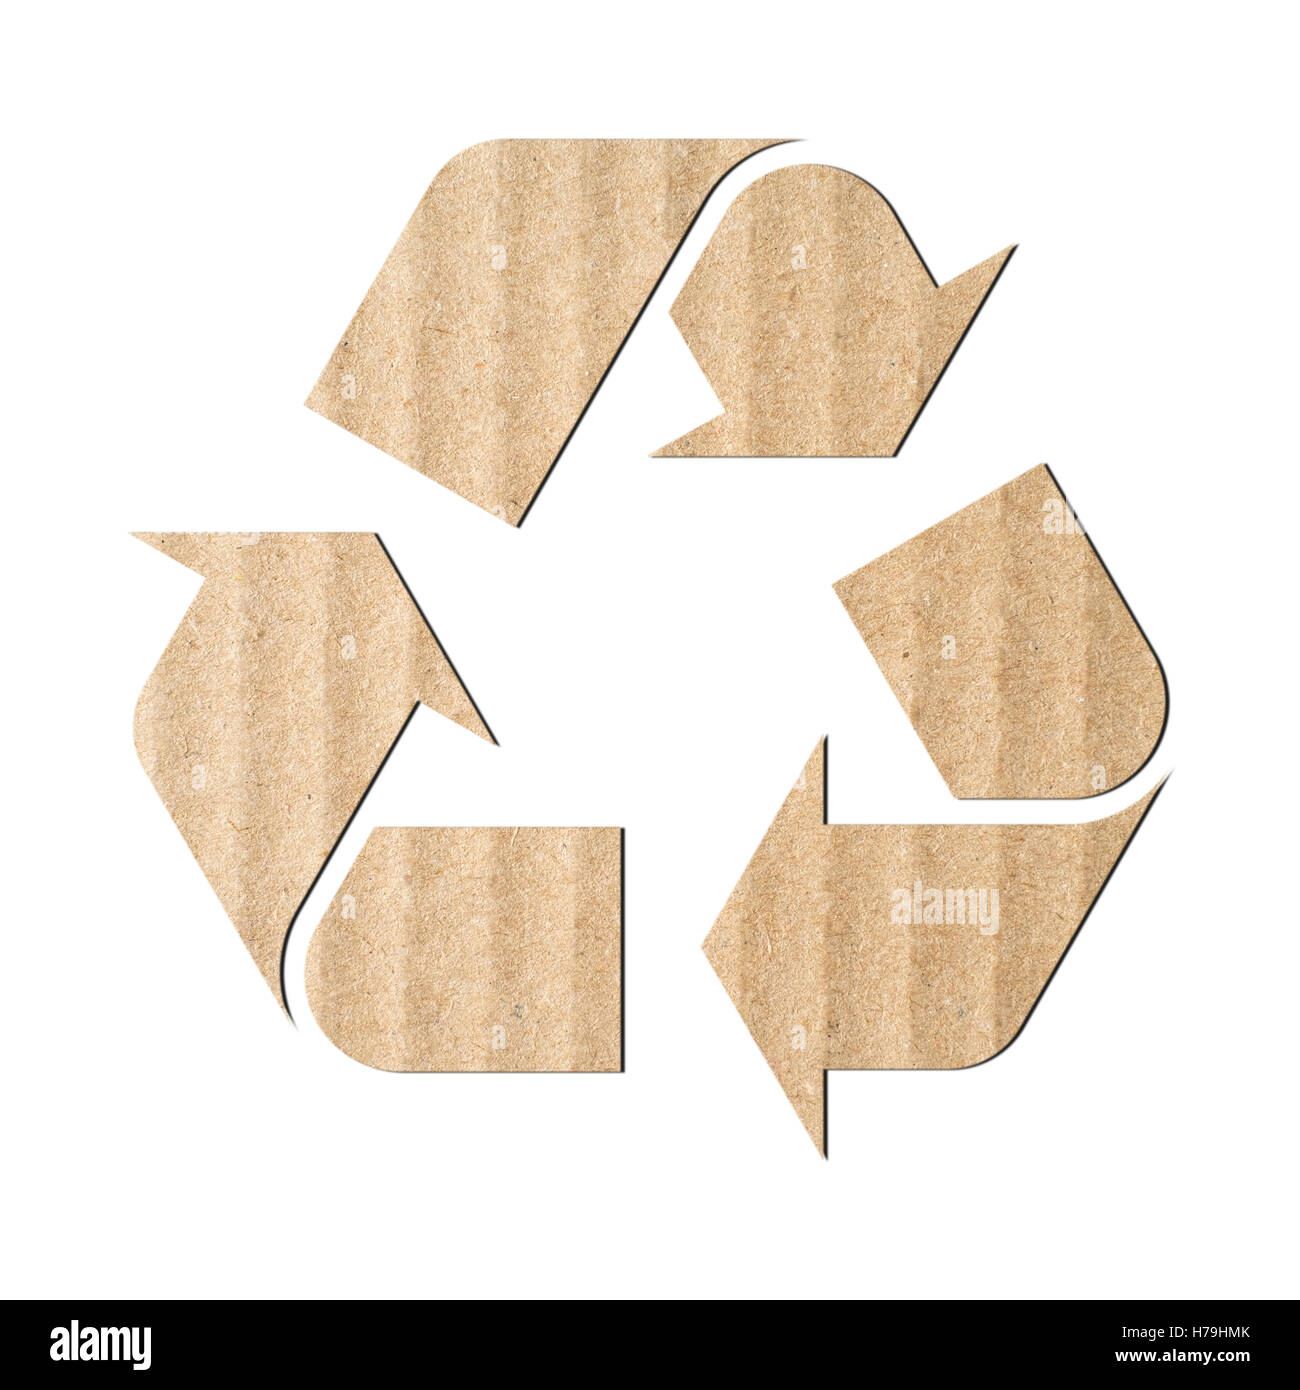 Simbolo di riciclaggio di cartone ondulato Foto Stock